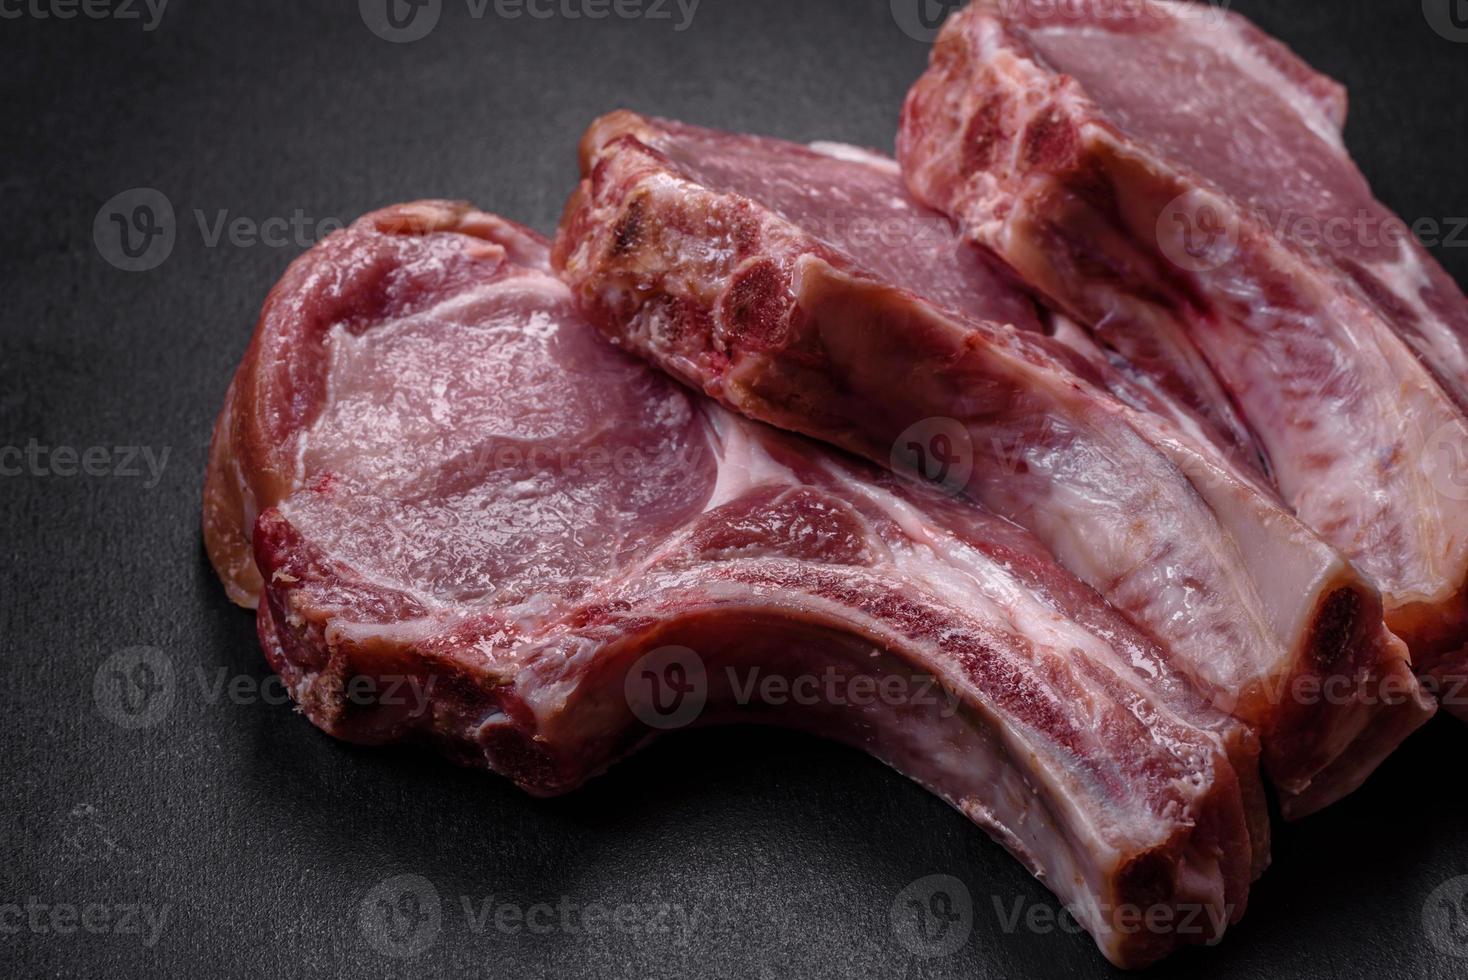 carne de porco crua fresca nas costelas com especiarias e ervas em uma tábua de madeira foto